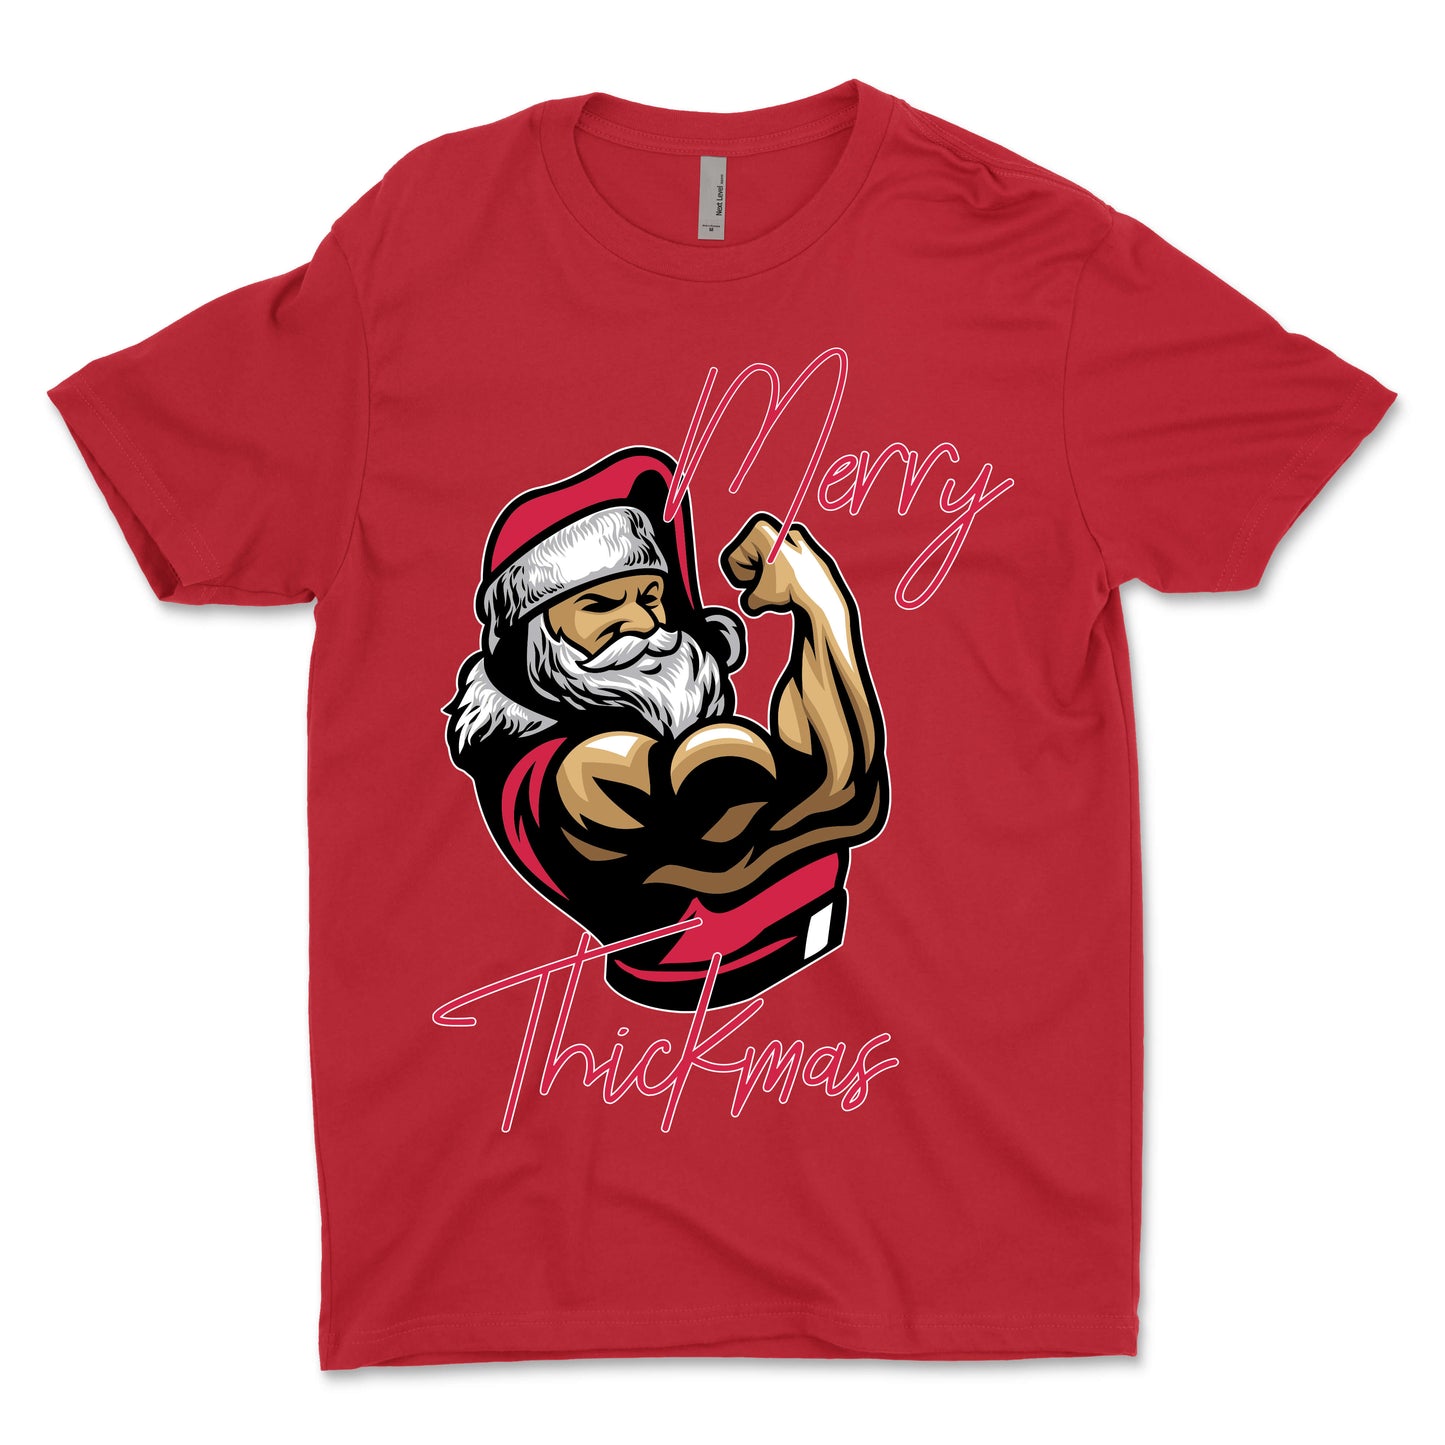 Merry Thickmas Men's T-Shirt